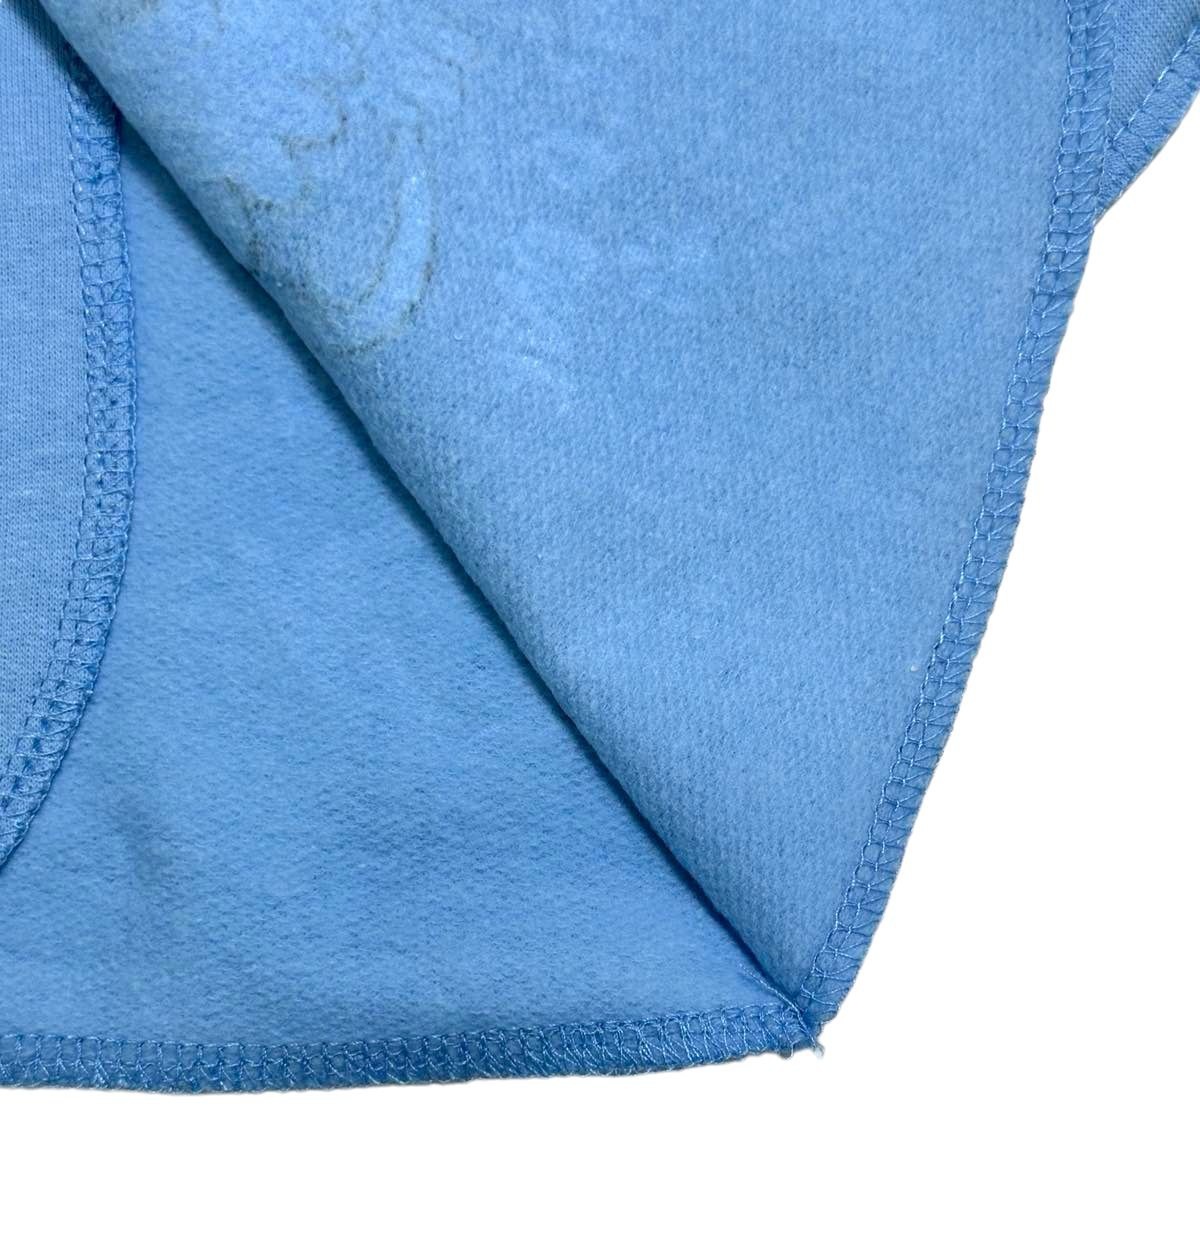 Распашонка «НЕЦАРАПКА» однотонный начёс голубого цвета, Голубой, 22, 3-6 месяца, 62-68см